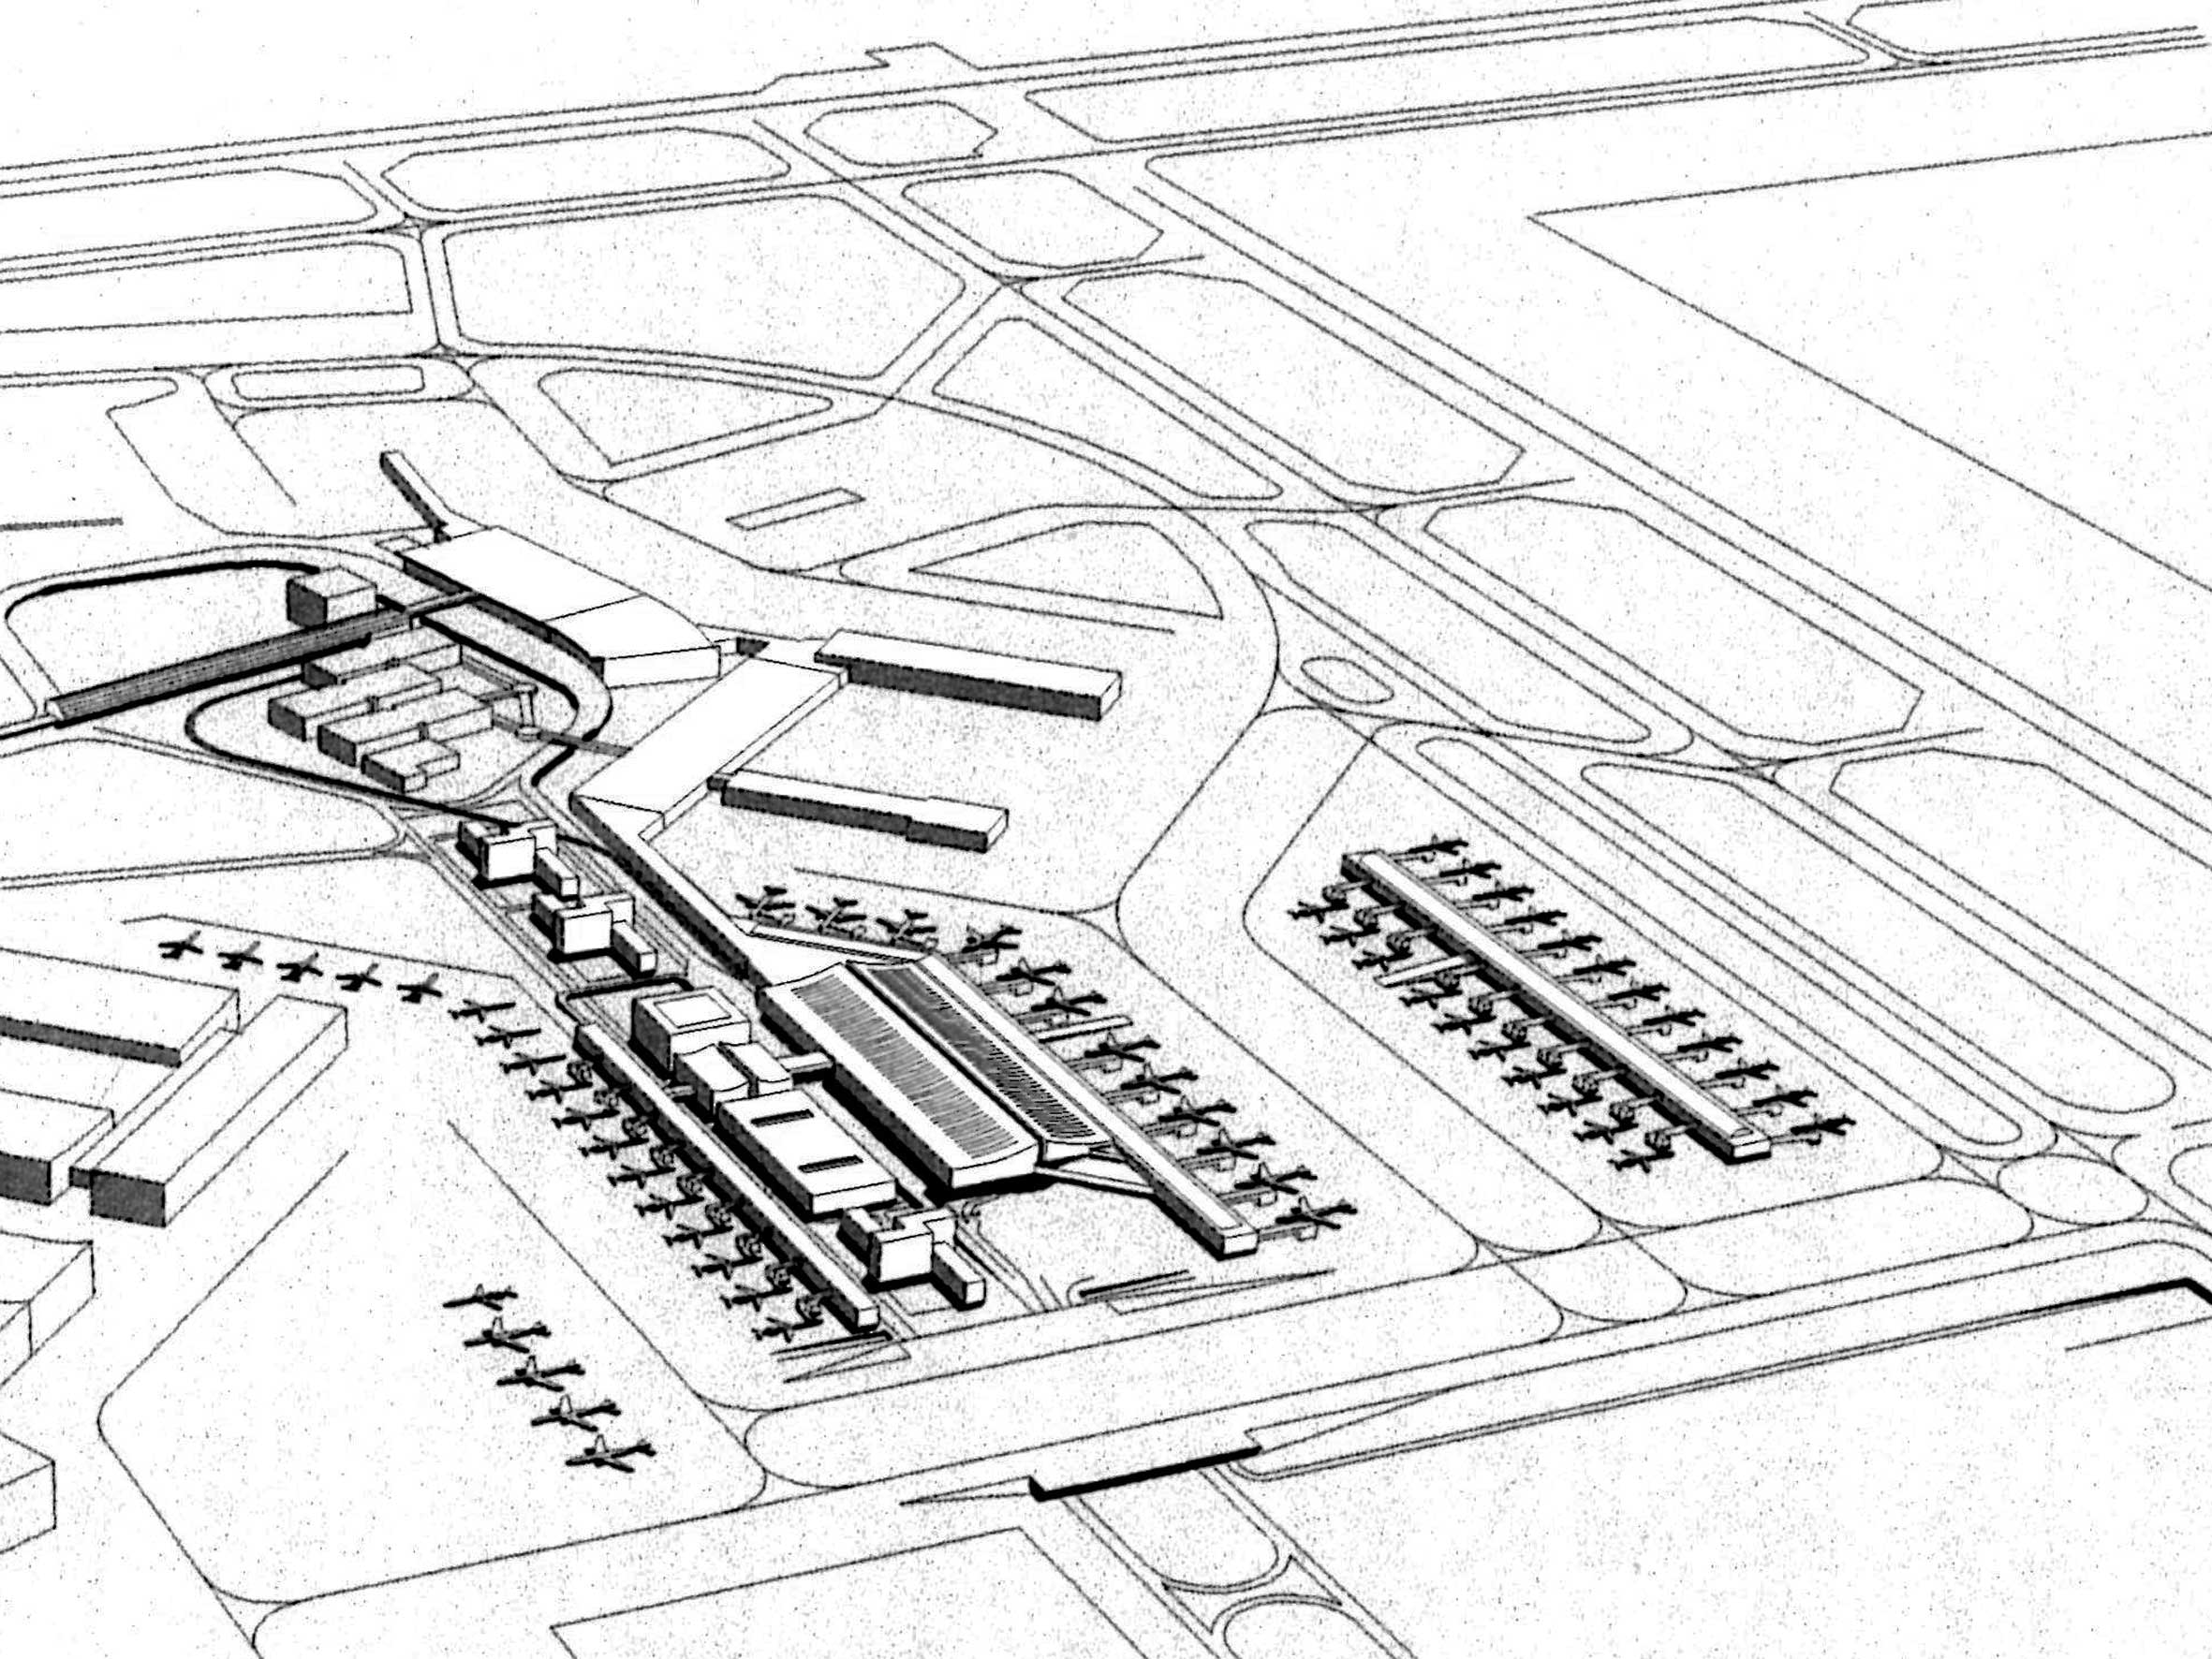 23 - Proposta per una nuova aerostazione Alitalia nell’area centrale e merci dell’Aeroporto “L. Da Vinci”, Fiumicino (RM) - Vista prospettica aerea